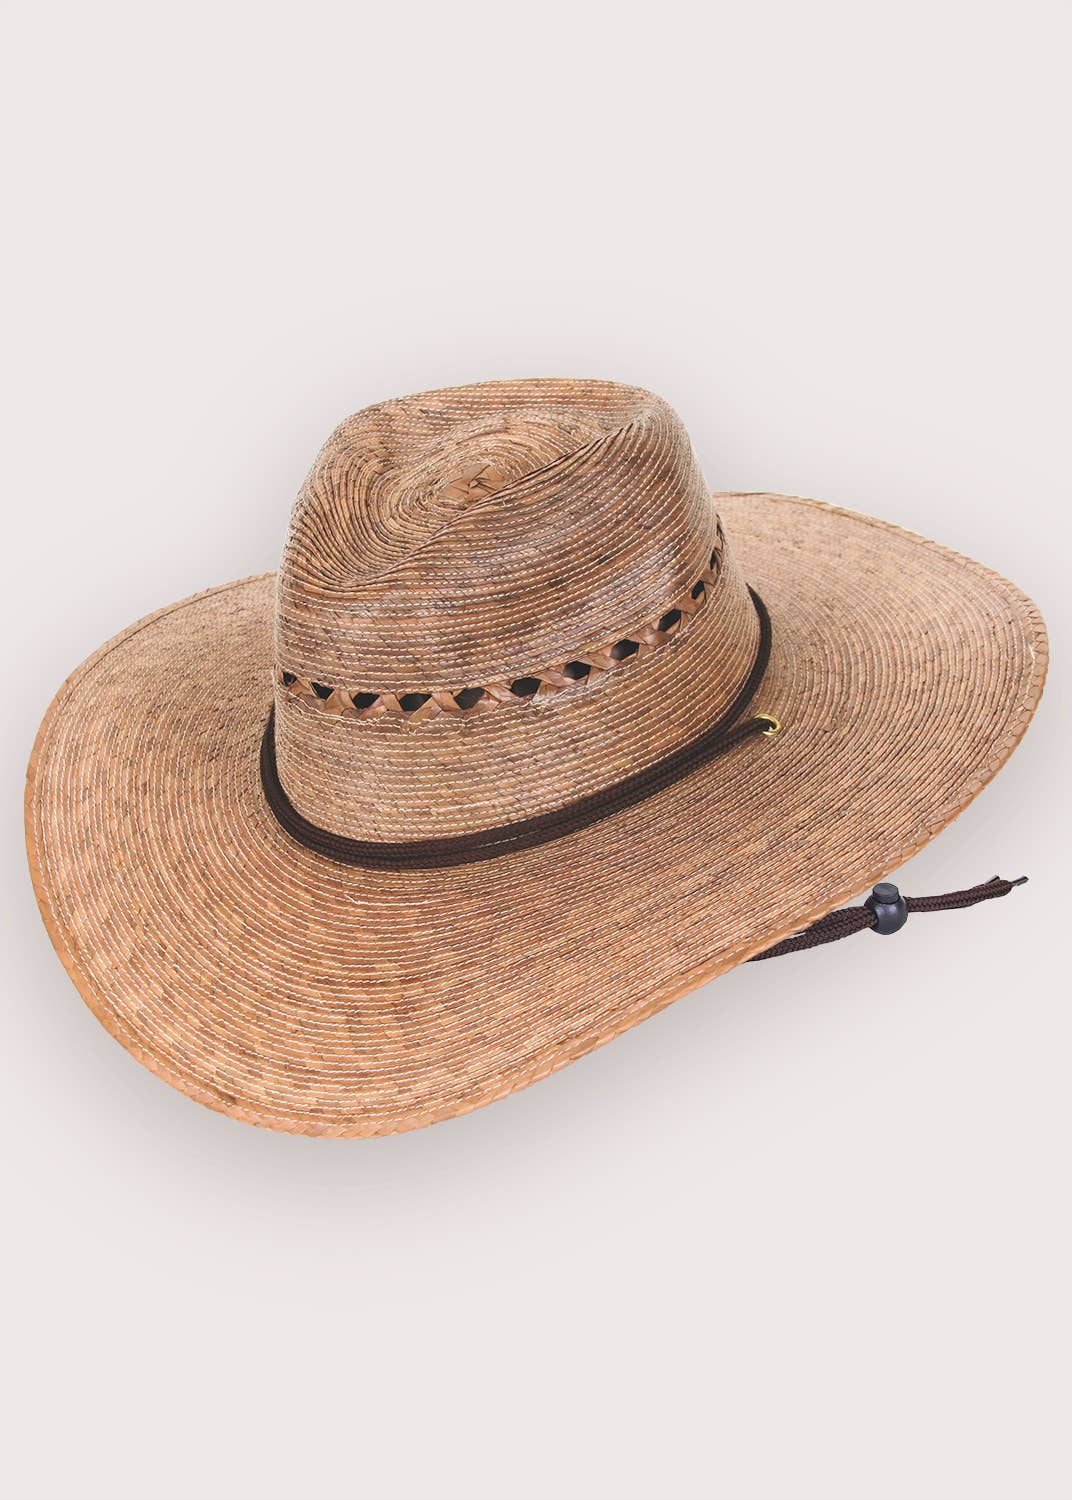 Wholesale Men's Hats 57,59 Tris NQ80